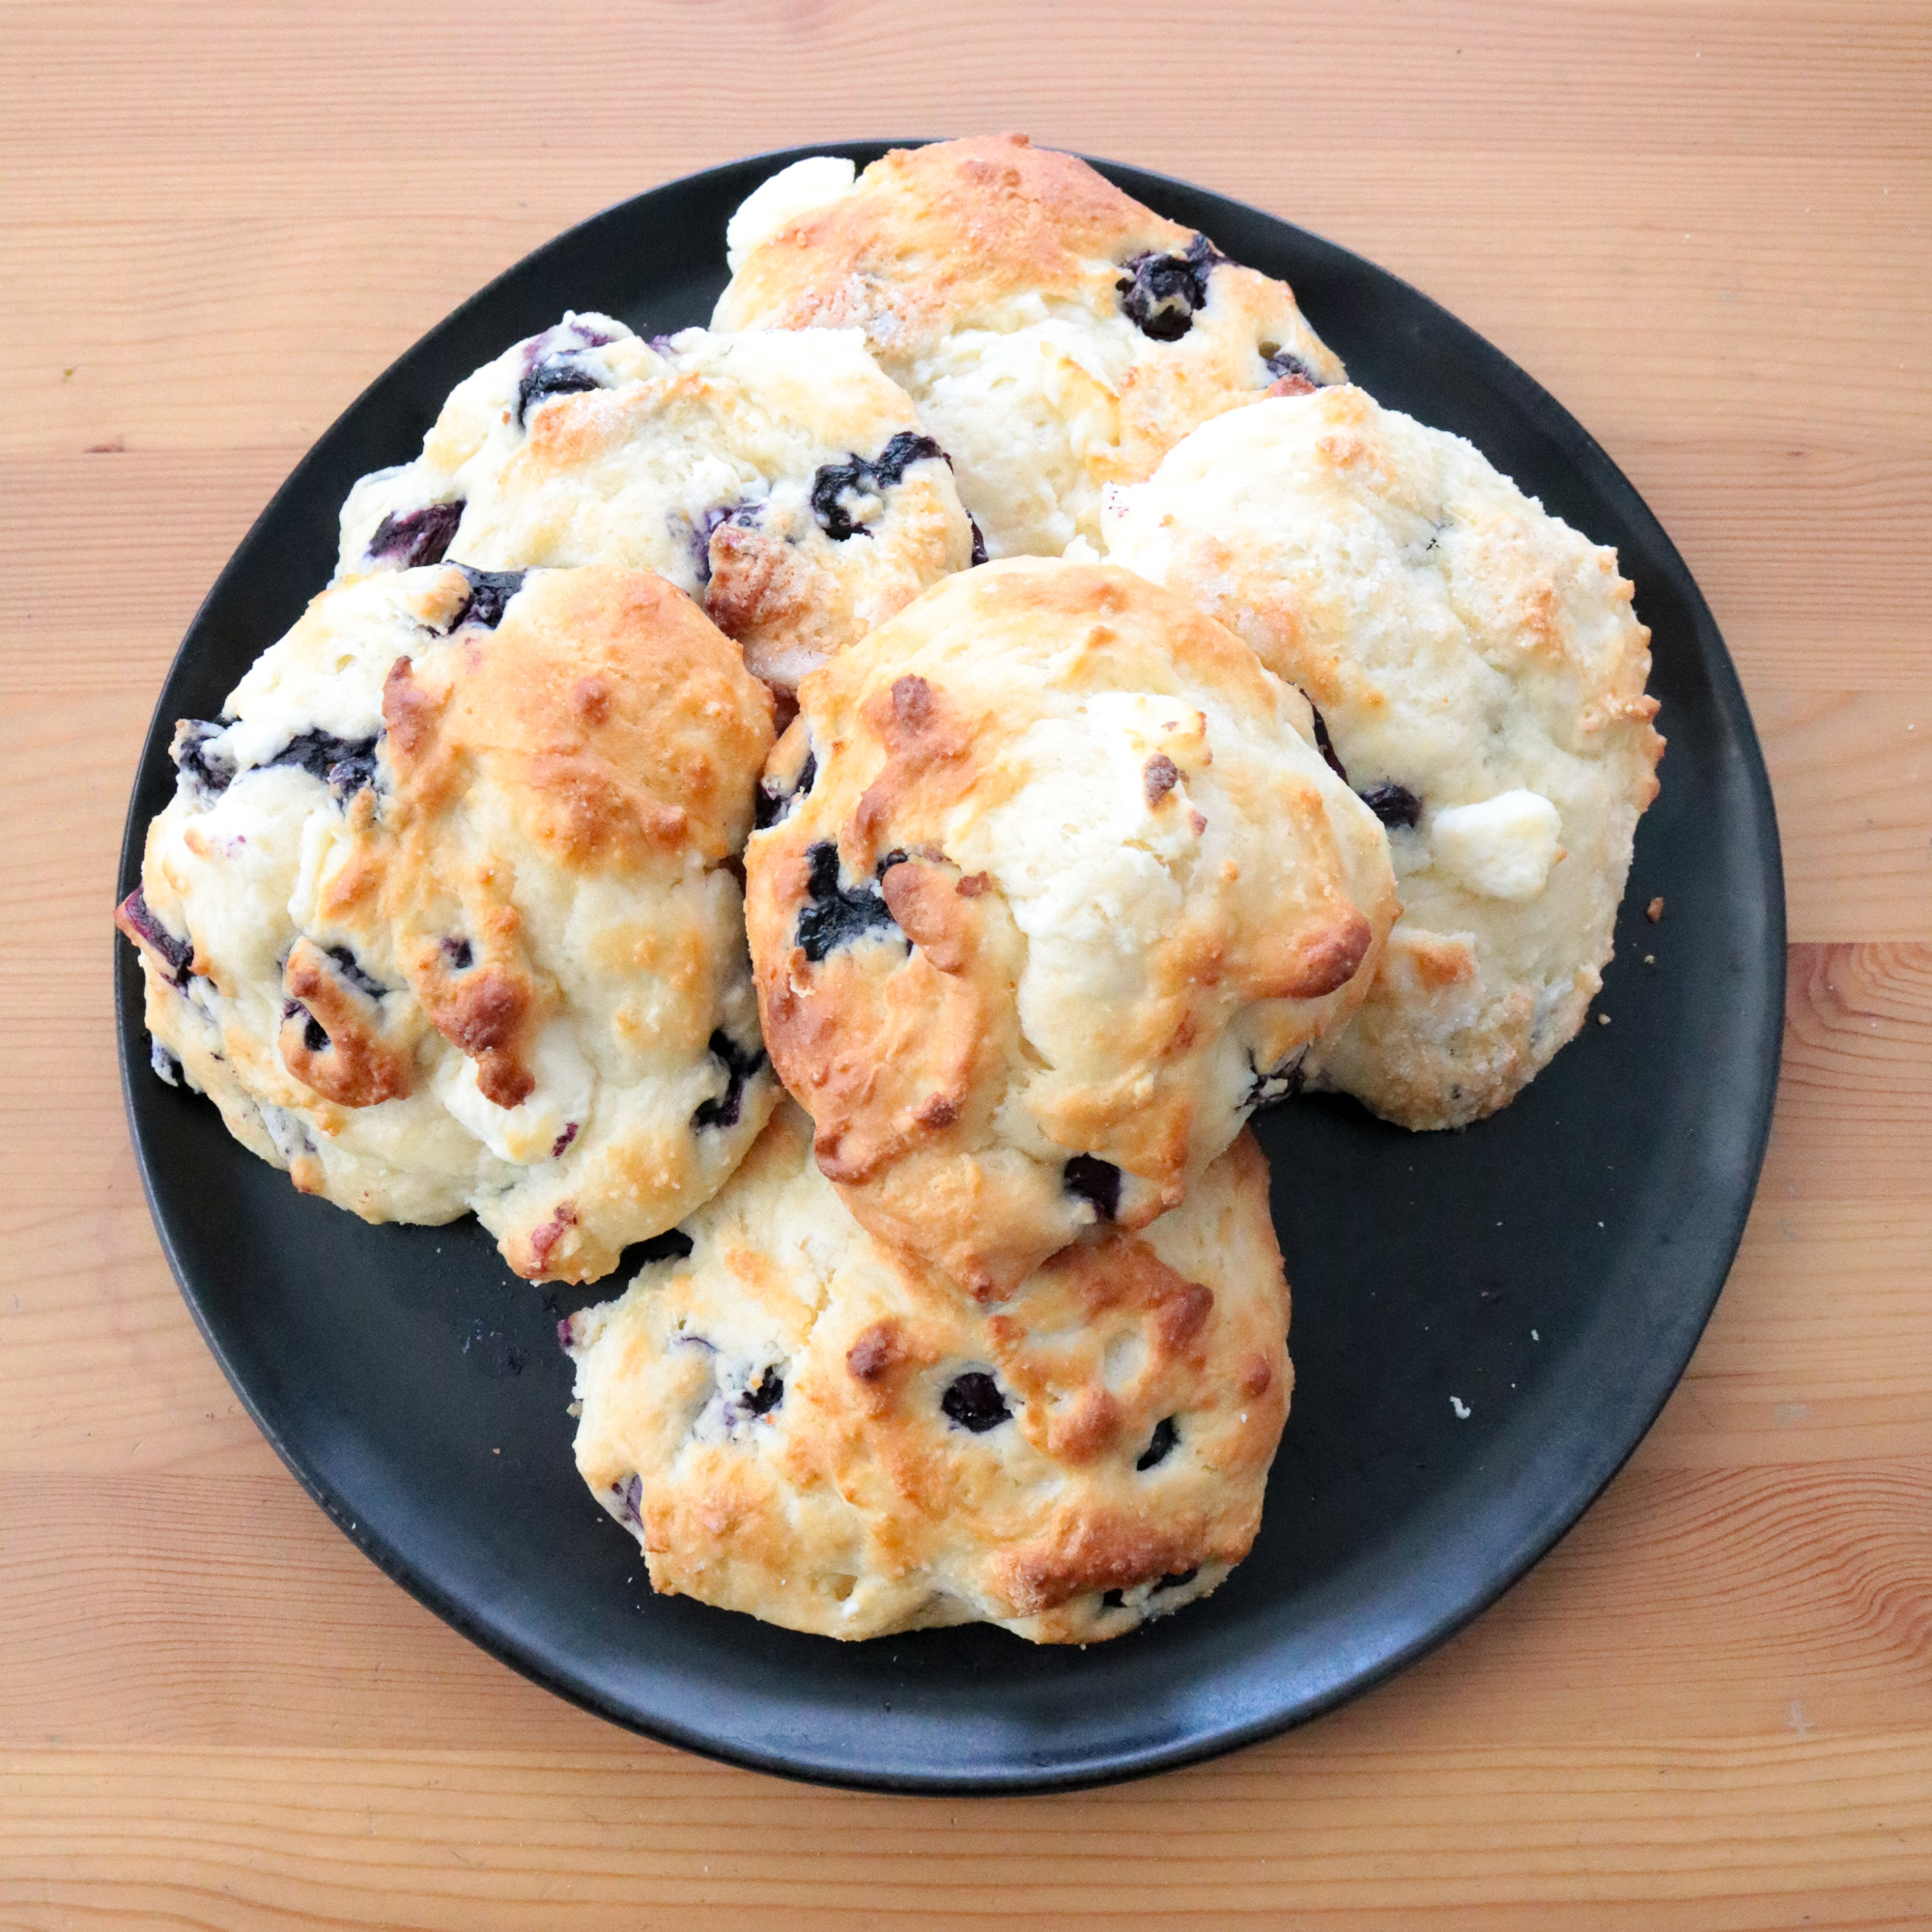 Mini Scone Muffins (Scoffins) Recipe.